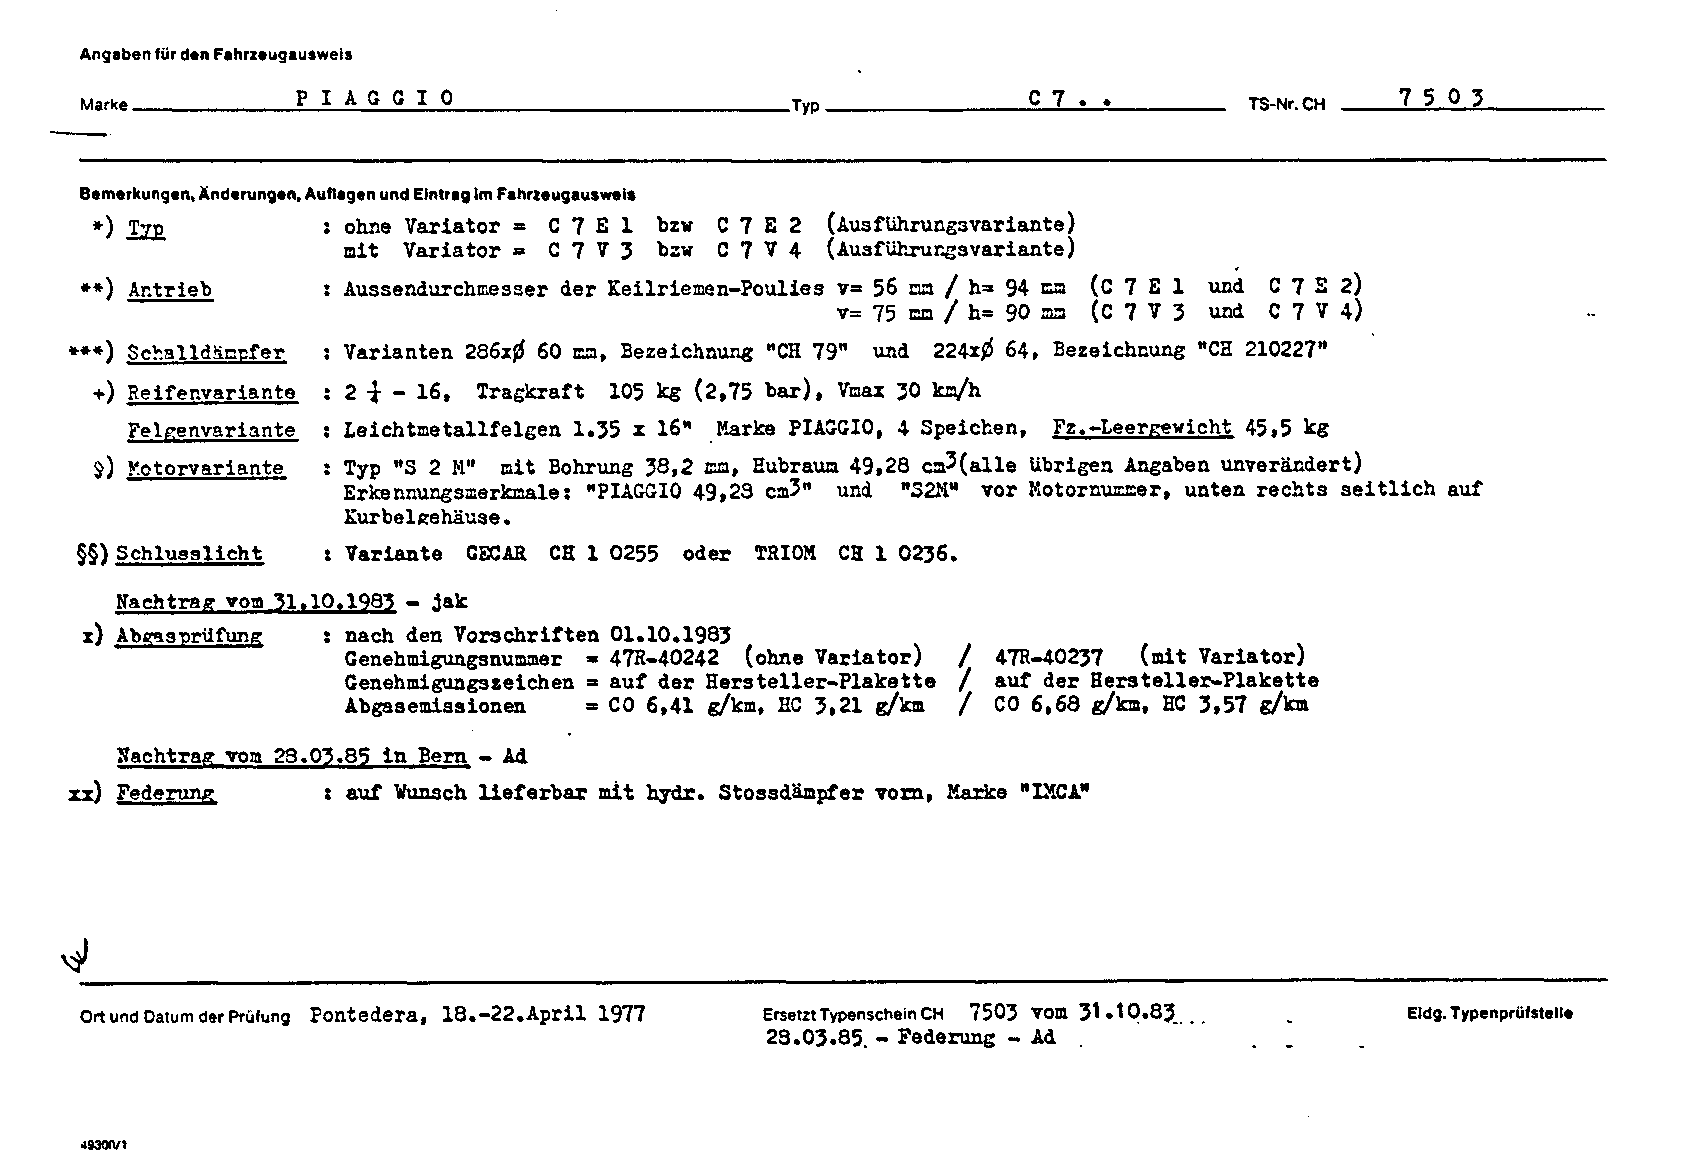 Swiss Certificate of Conformity 7503 German Page 2 (TG.DE.7503.2.png)